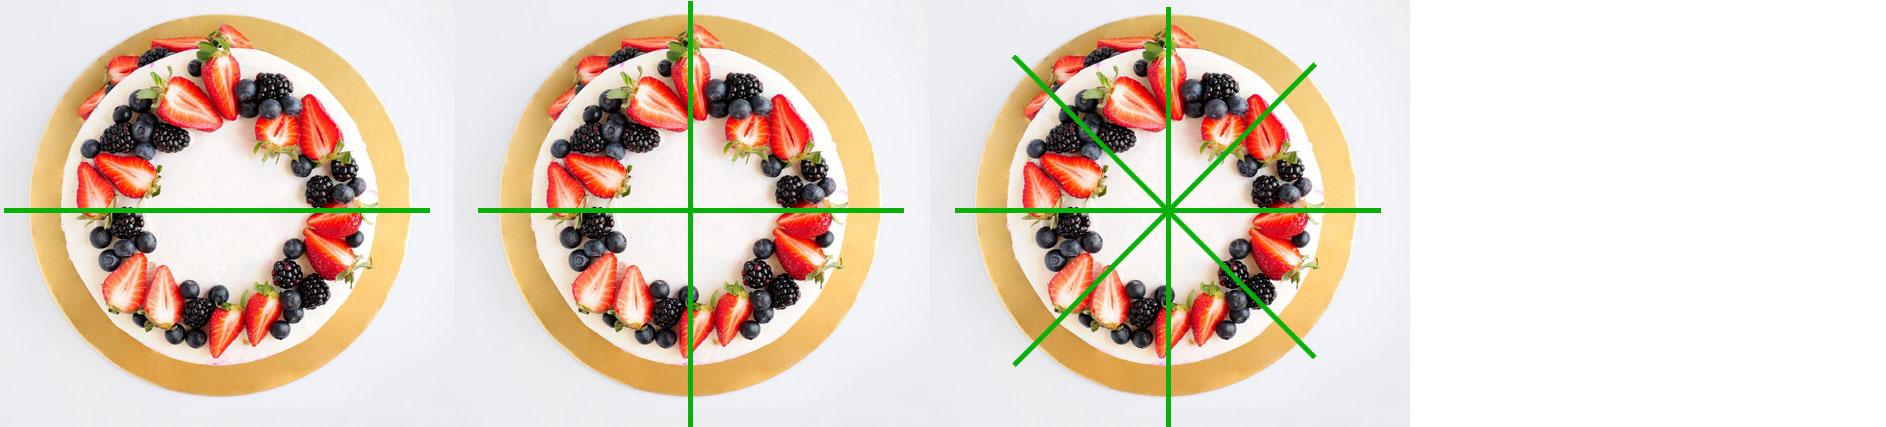 Как разделить круглый торт на 8 частей